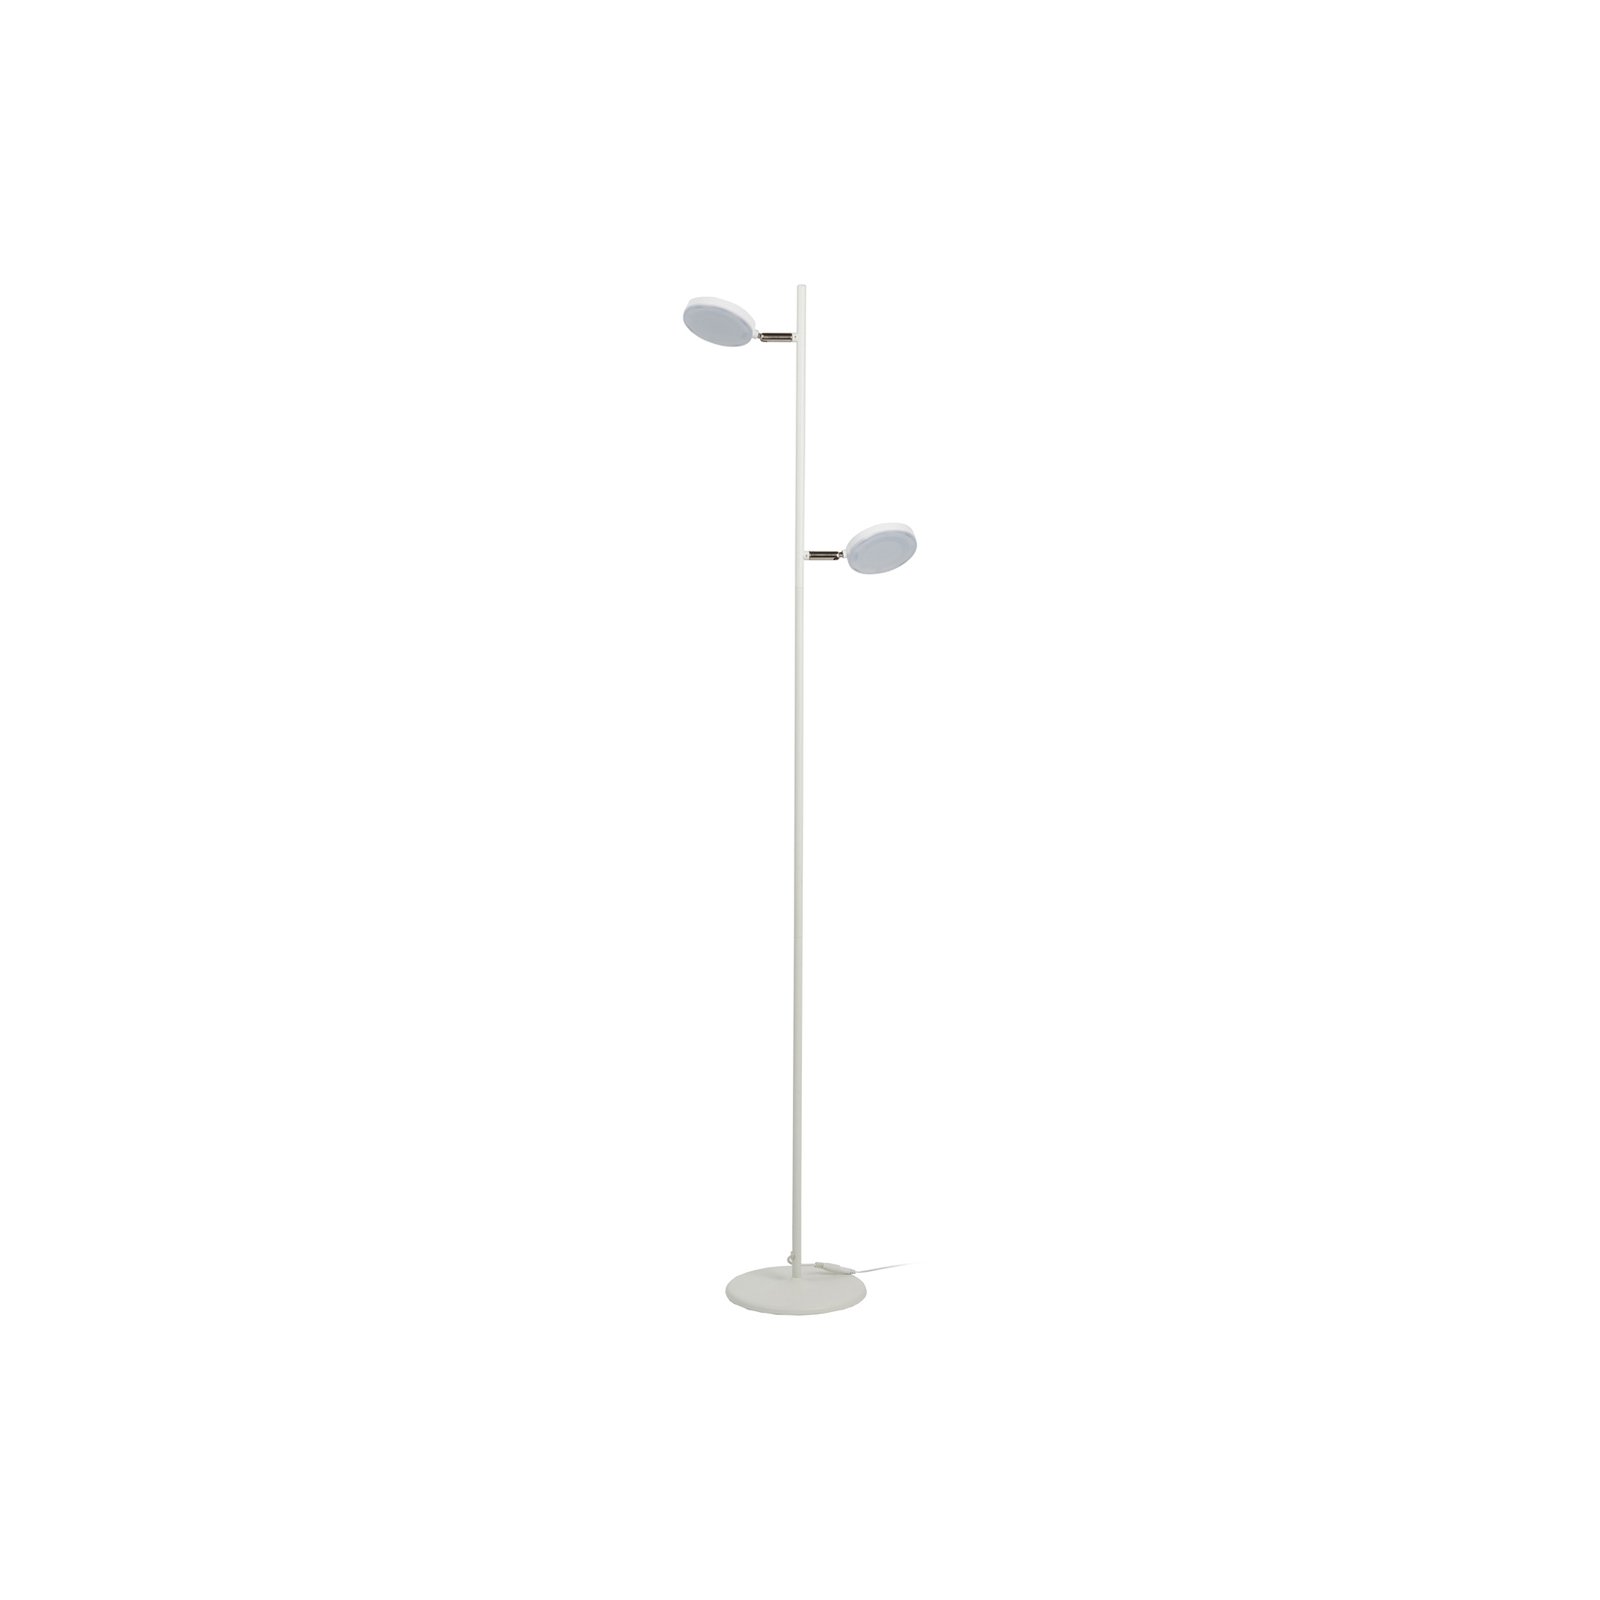 Aluminor Declic lampadaire LED, à 2 lampes, blanc